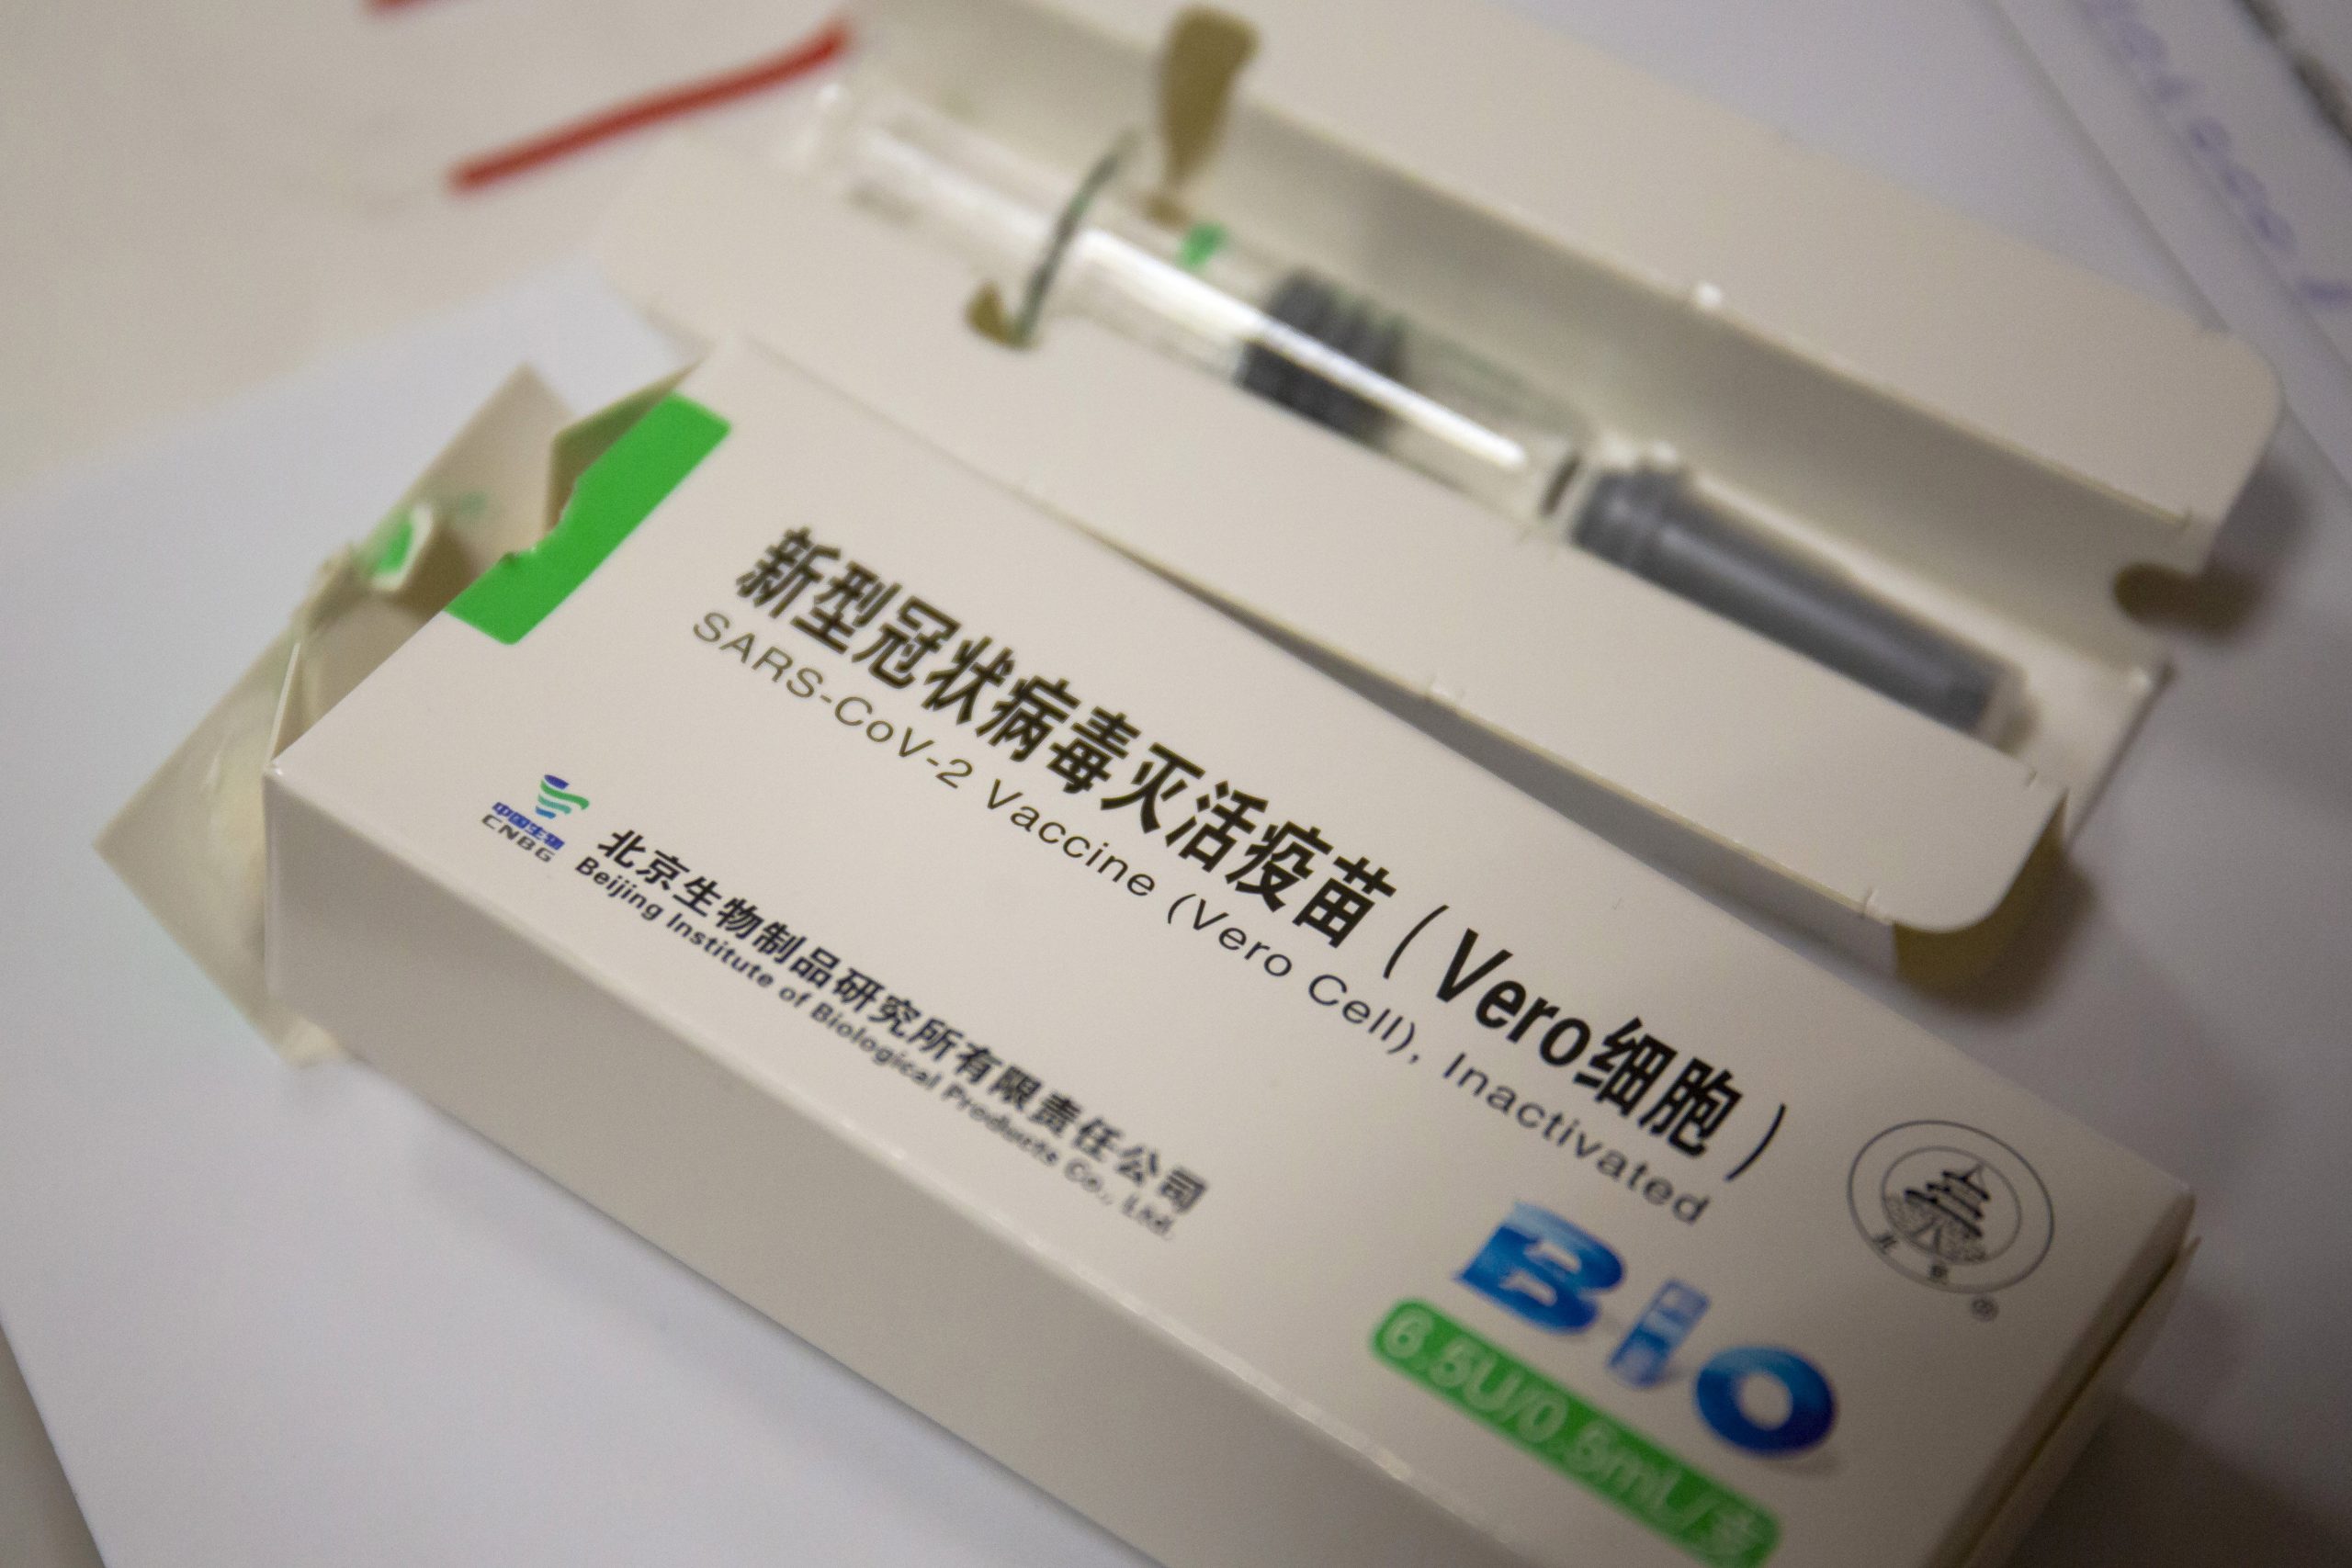 Fake News über den chinesischen Impfstoff Sinopharm verbreitet?